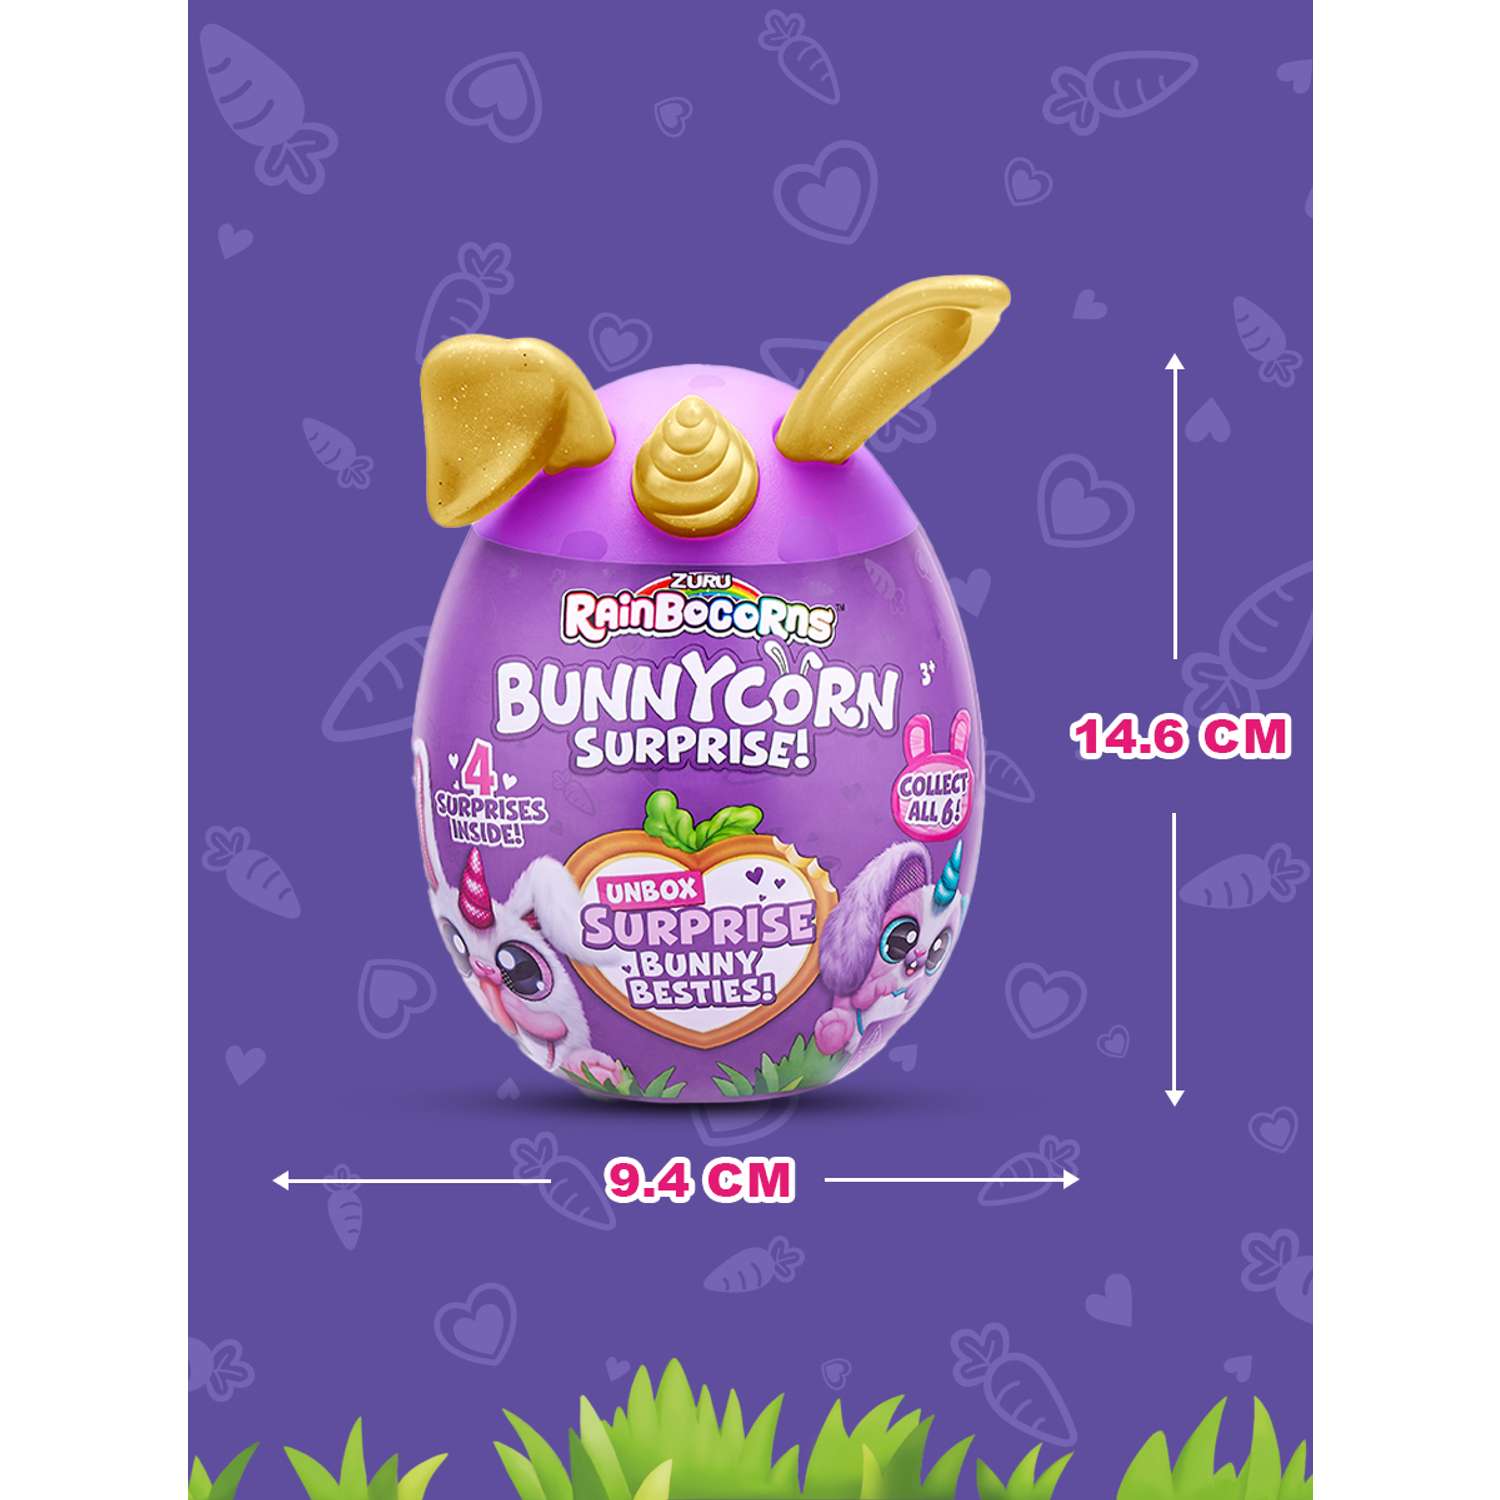 Игрушка Zuru Rainbocorns Bunnycorn в непрозрачной упаковке (Сюрприз) 9260 - фото 3